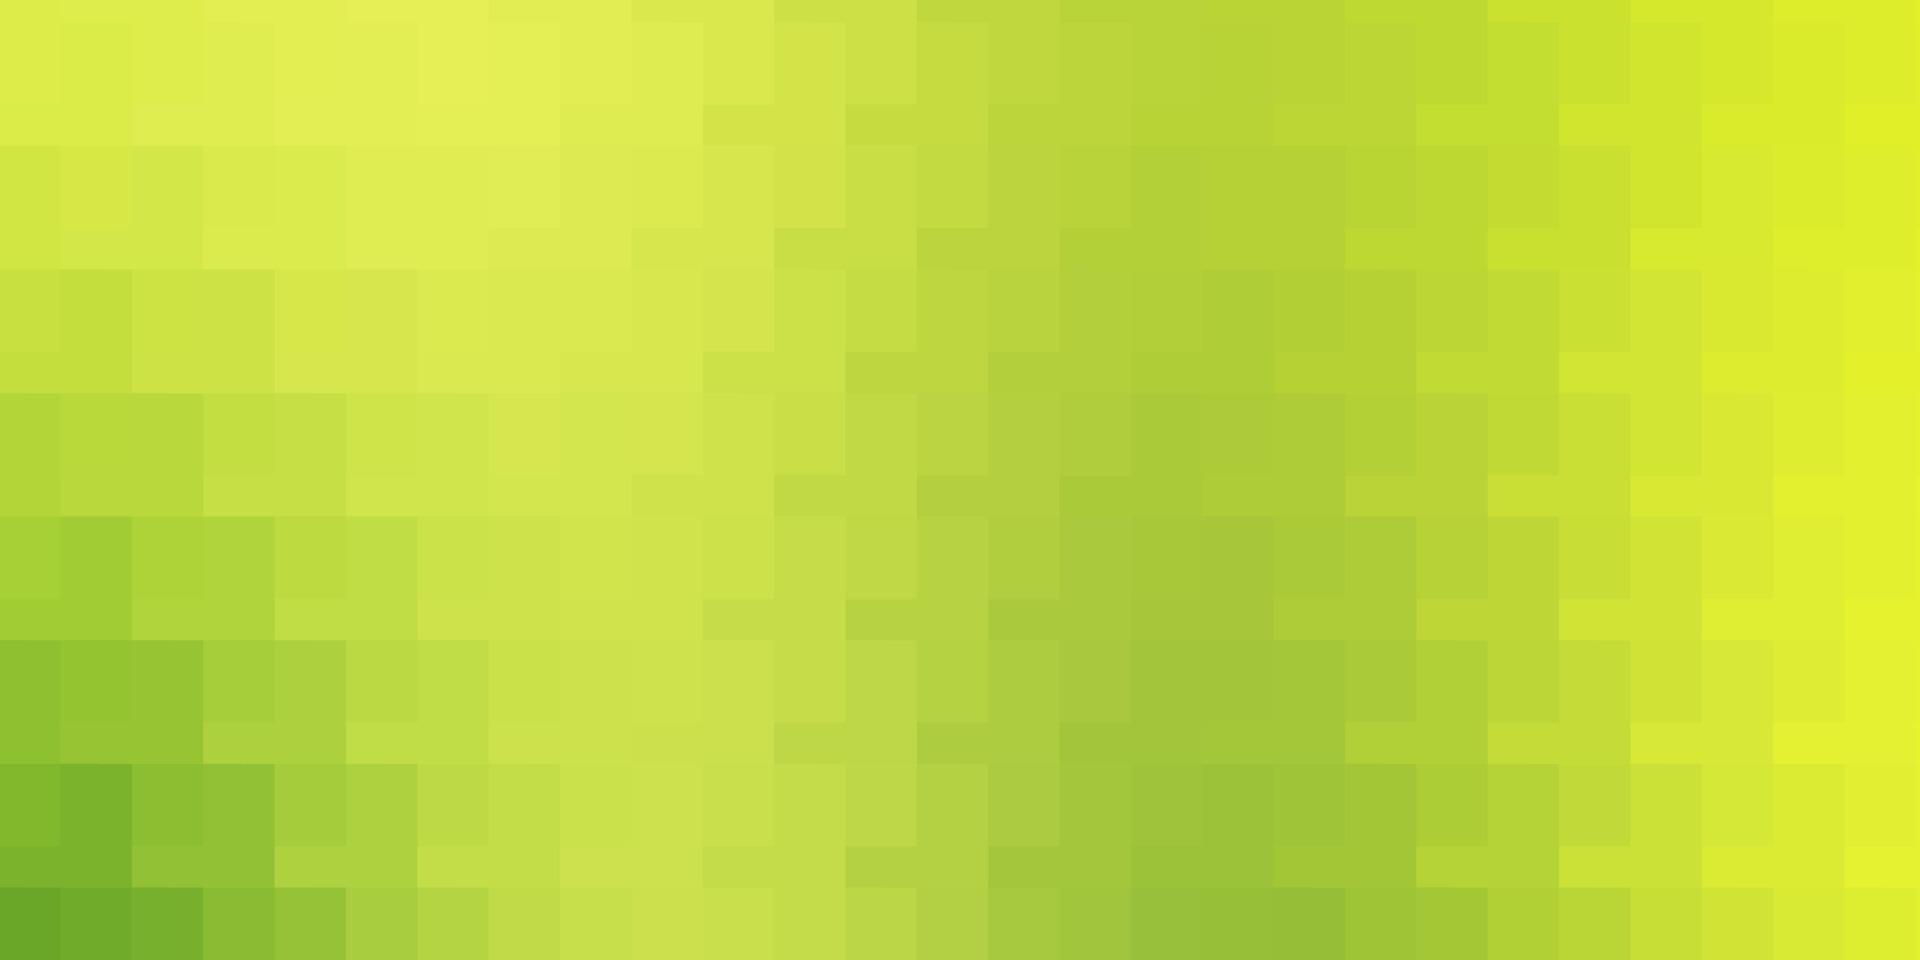 modelo de vetor verde e amarelo claro em retângulos.